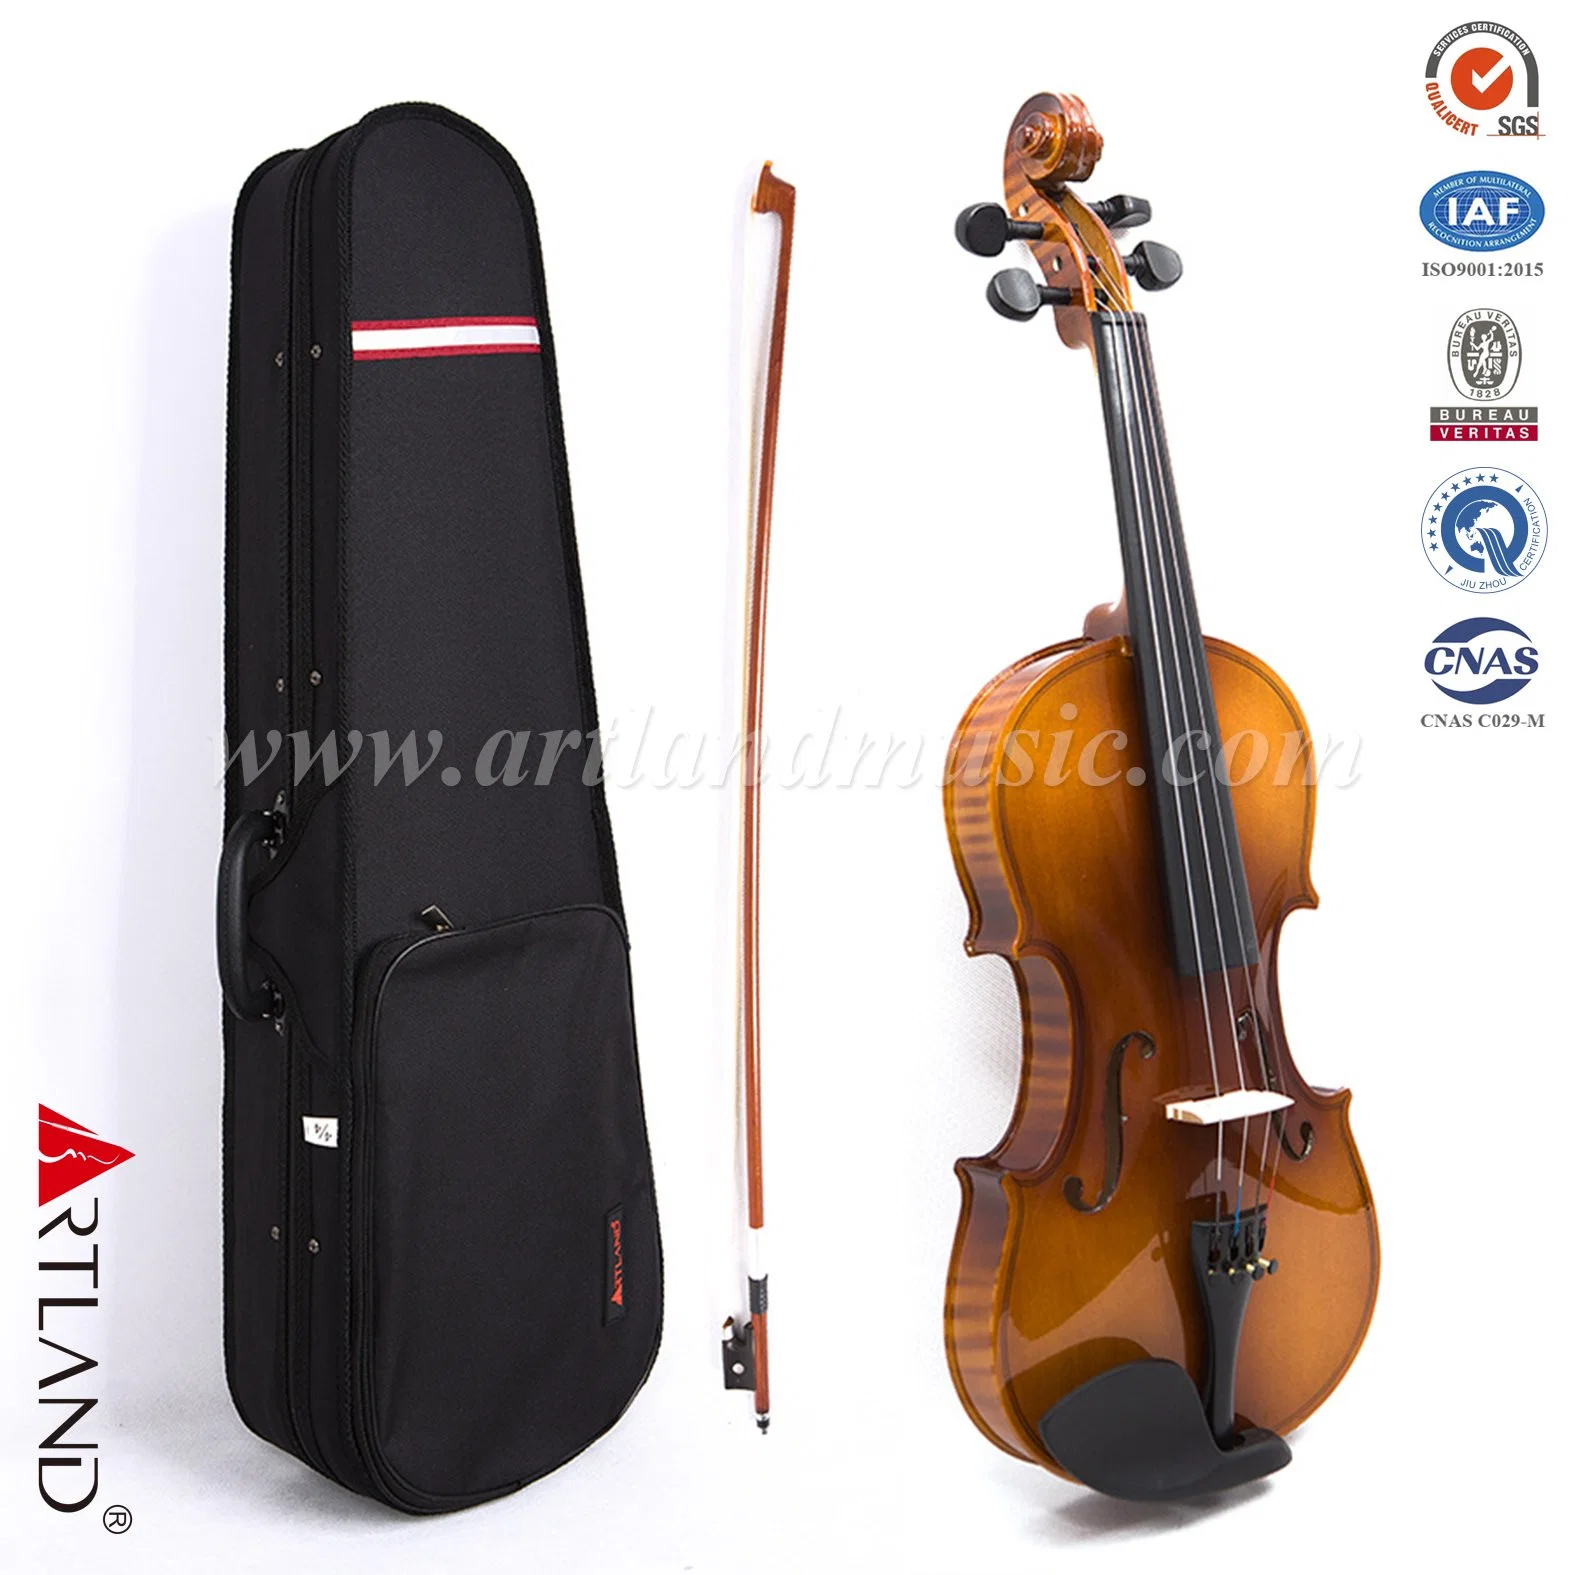 Contrachapado flameado Student Violin conjunto Gloss Brown (GV101F) con estuche Y Violin Cover Bow Rosin